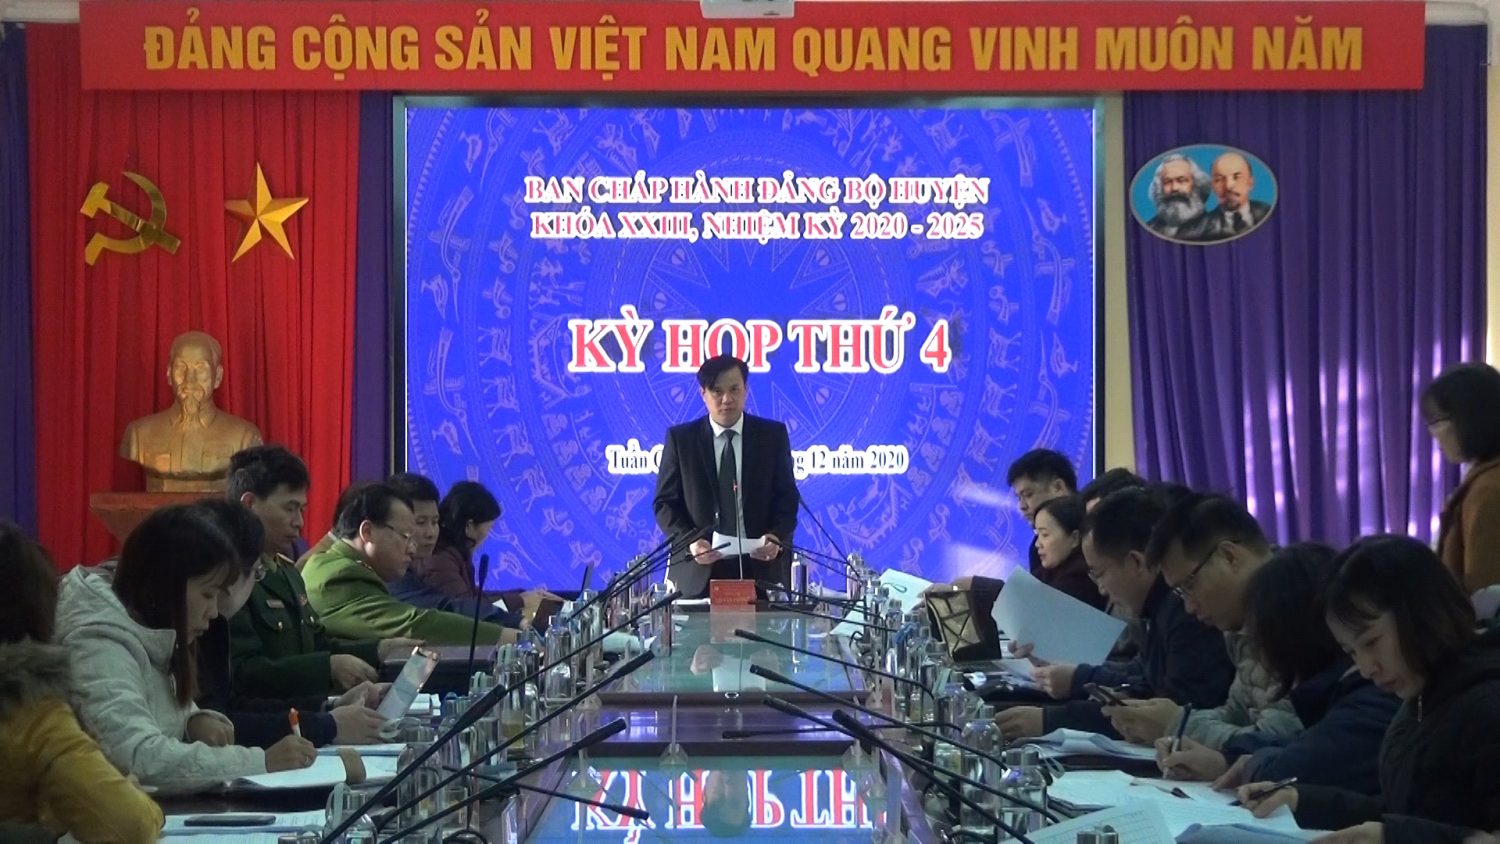 Kỳ họp thứ 4, BCH Đảng bộ hình bầu cua tôm cá
 khóa XXIII, NK 2020 – 2025